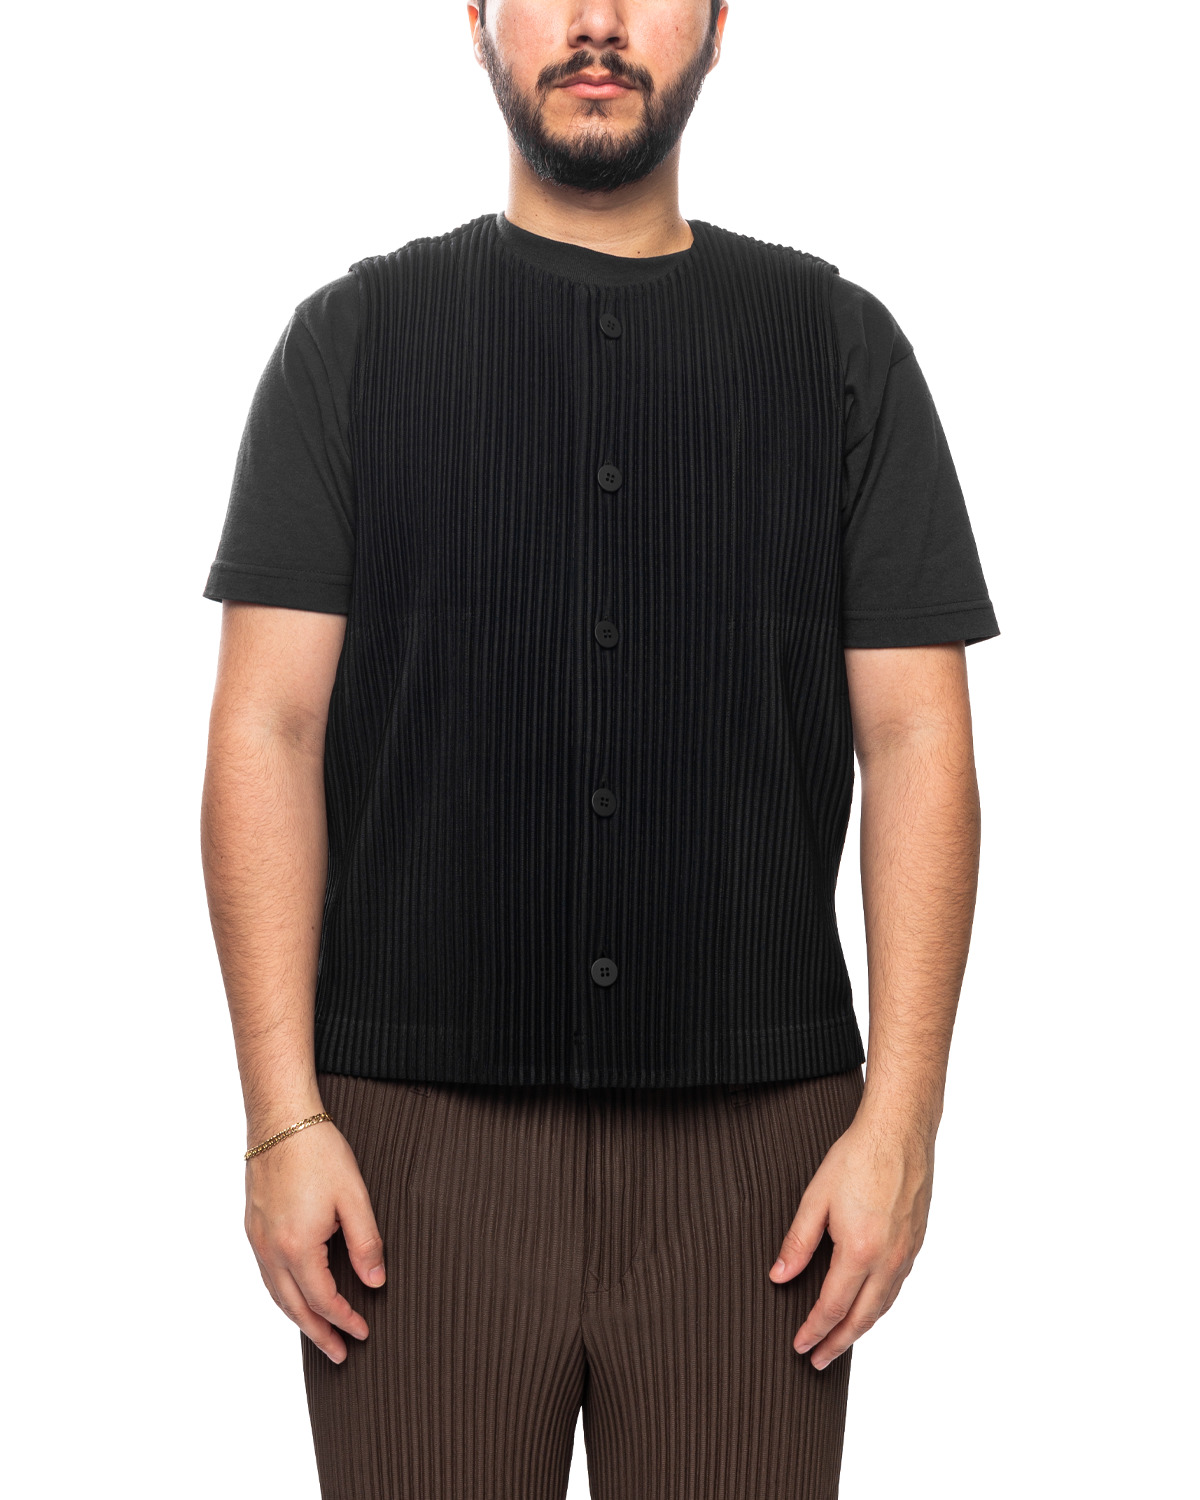 Tailored Pleats 1 Vest Black (no.15) - 1